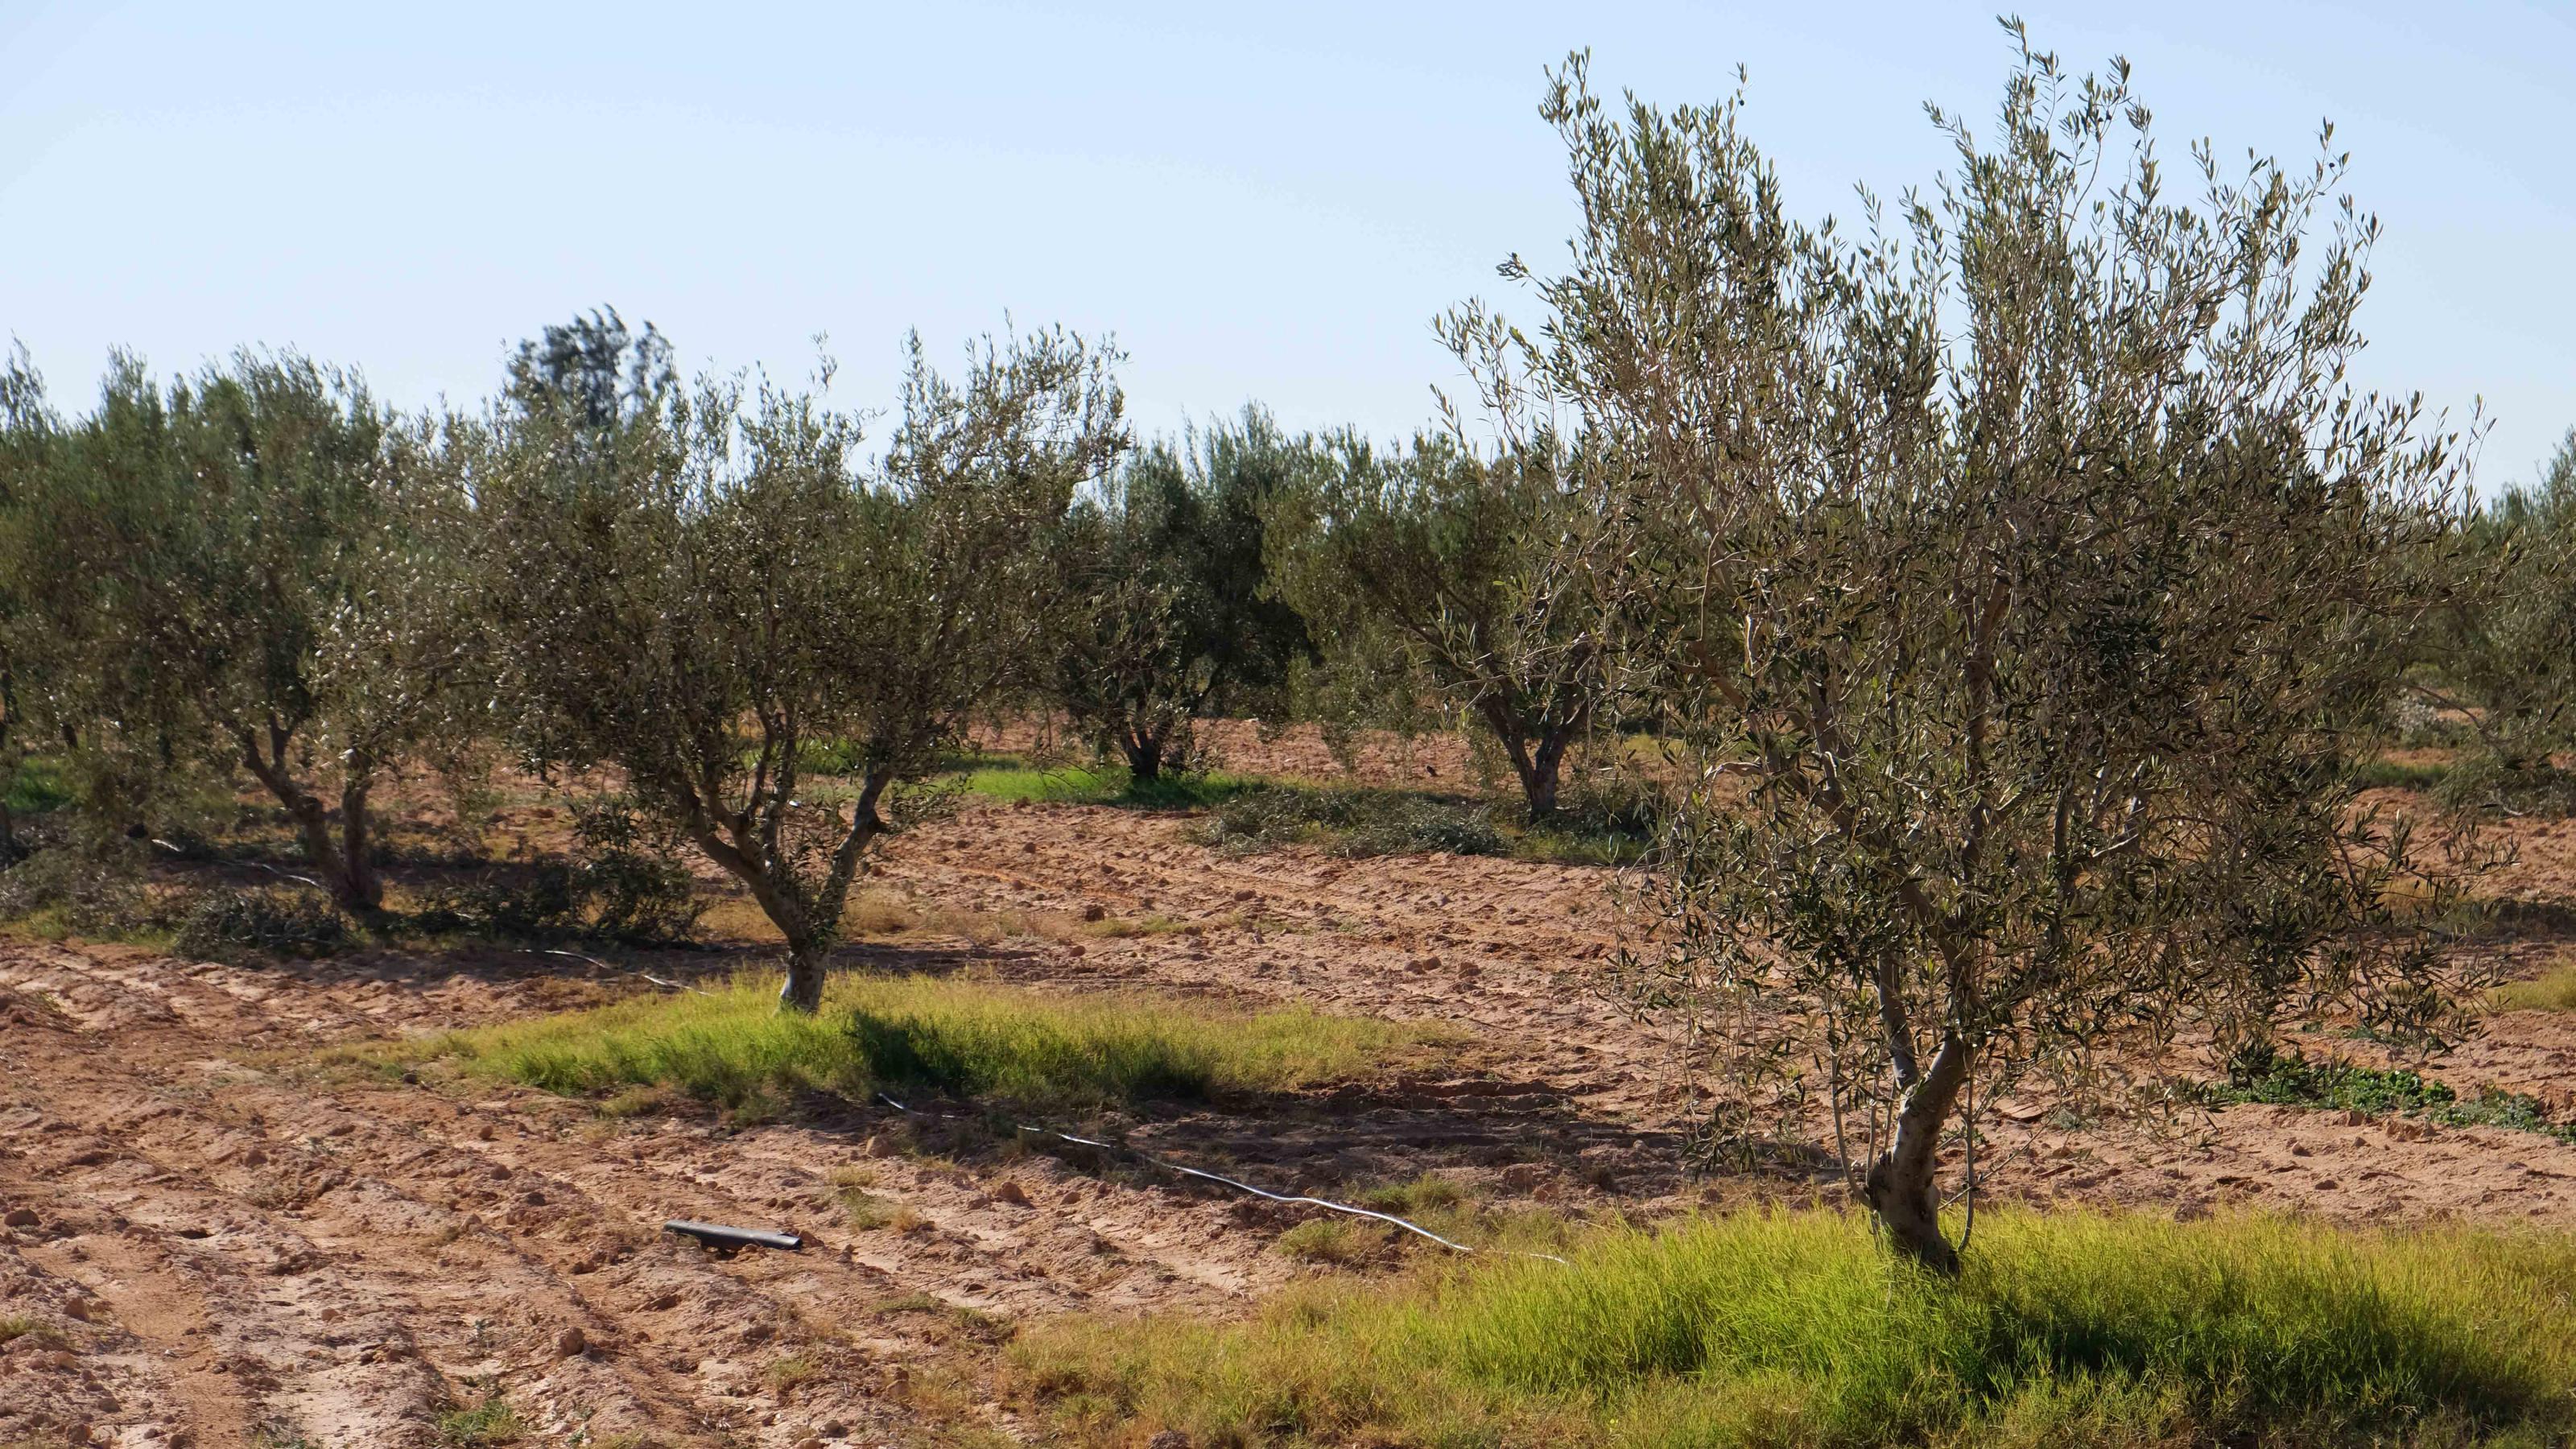 Rund vierzig Jahre alte Olivenbäume, mit fahl-grünen Blättern und leuchten grünem Unkraut am Fuß des Baumes